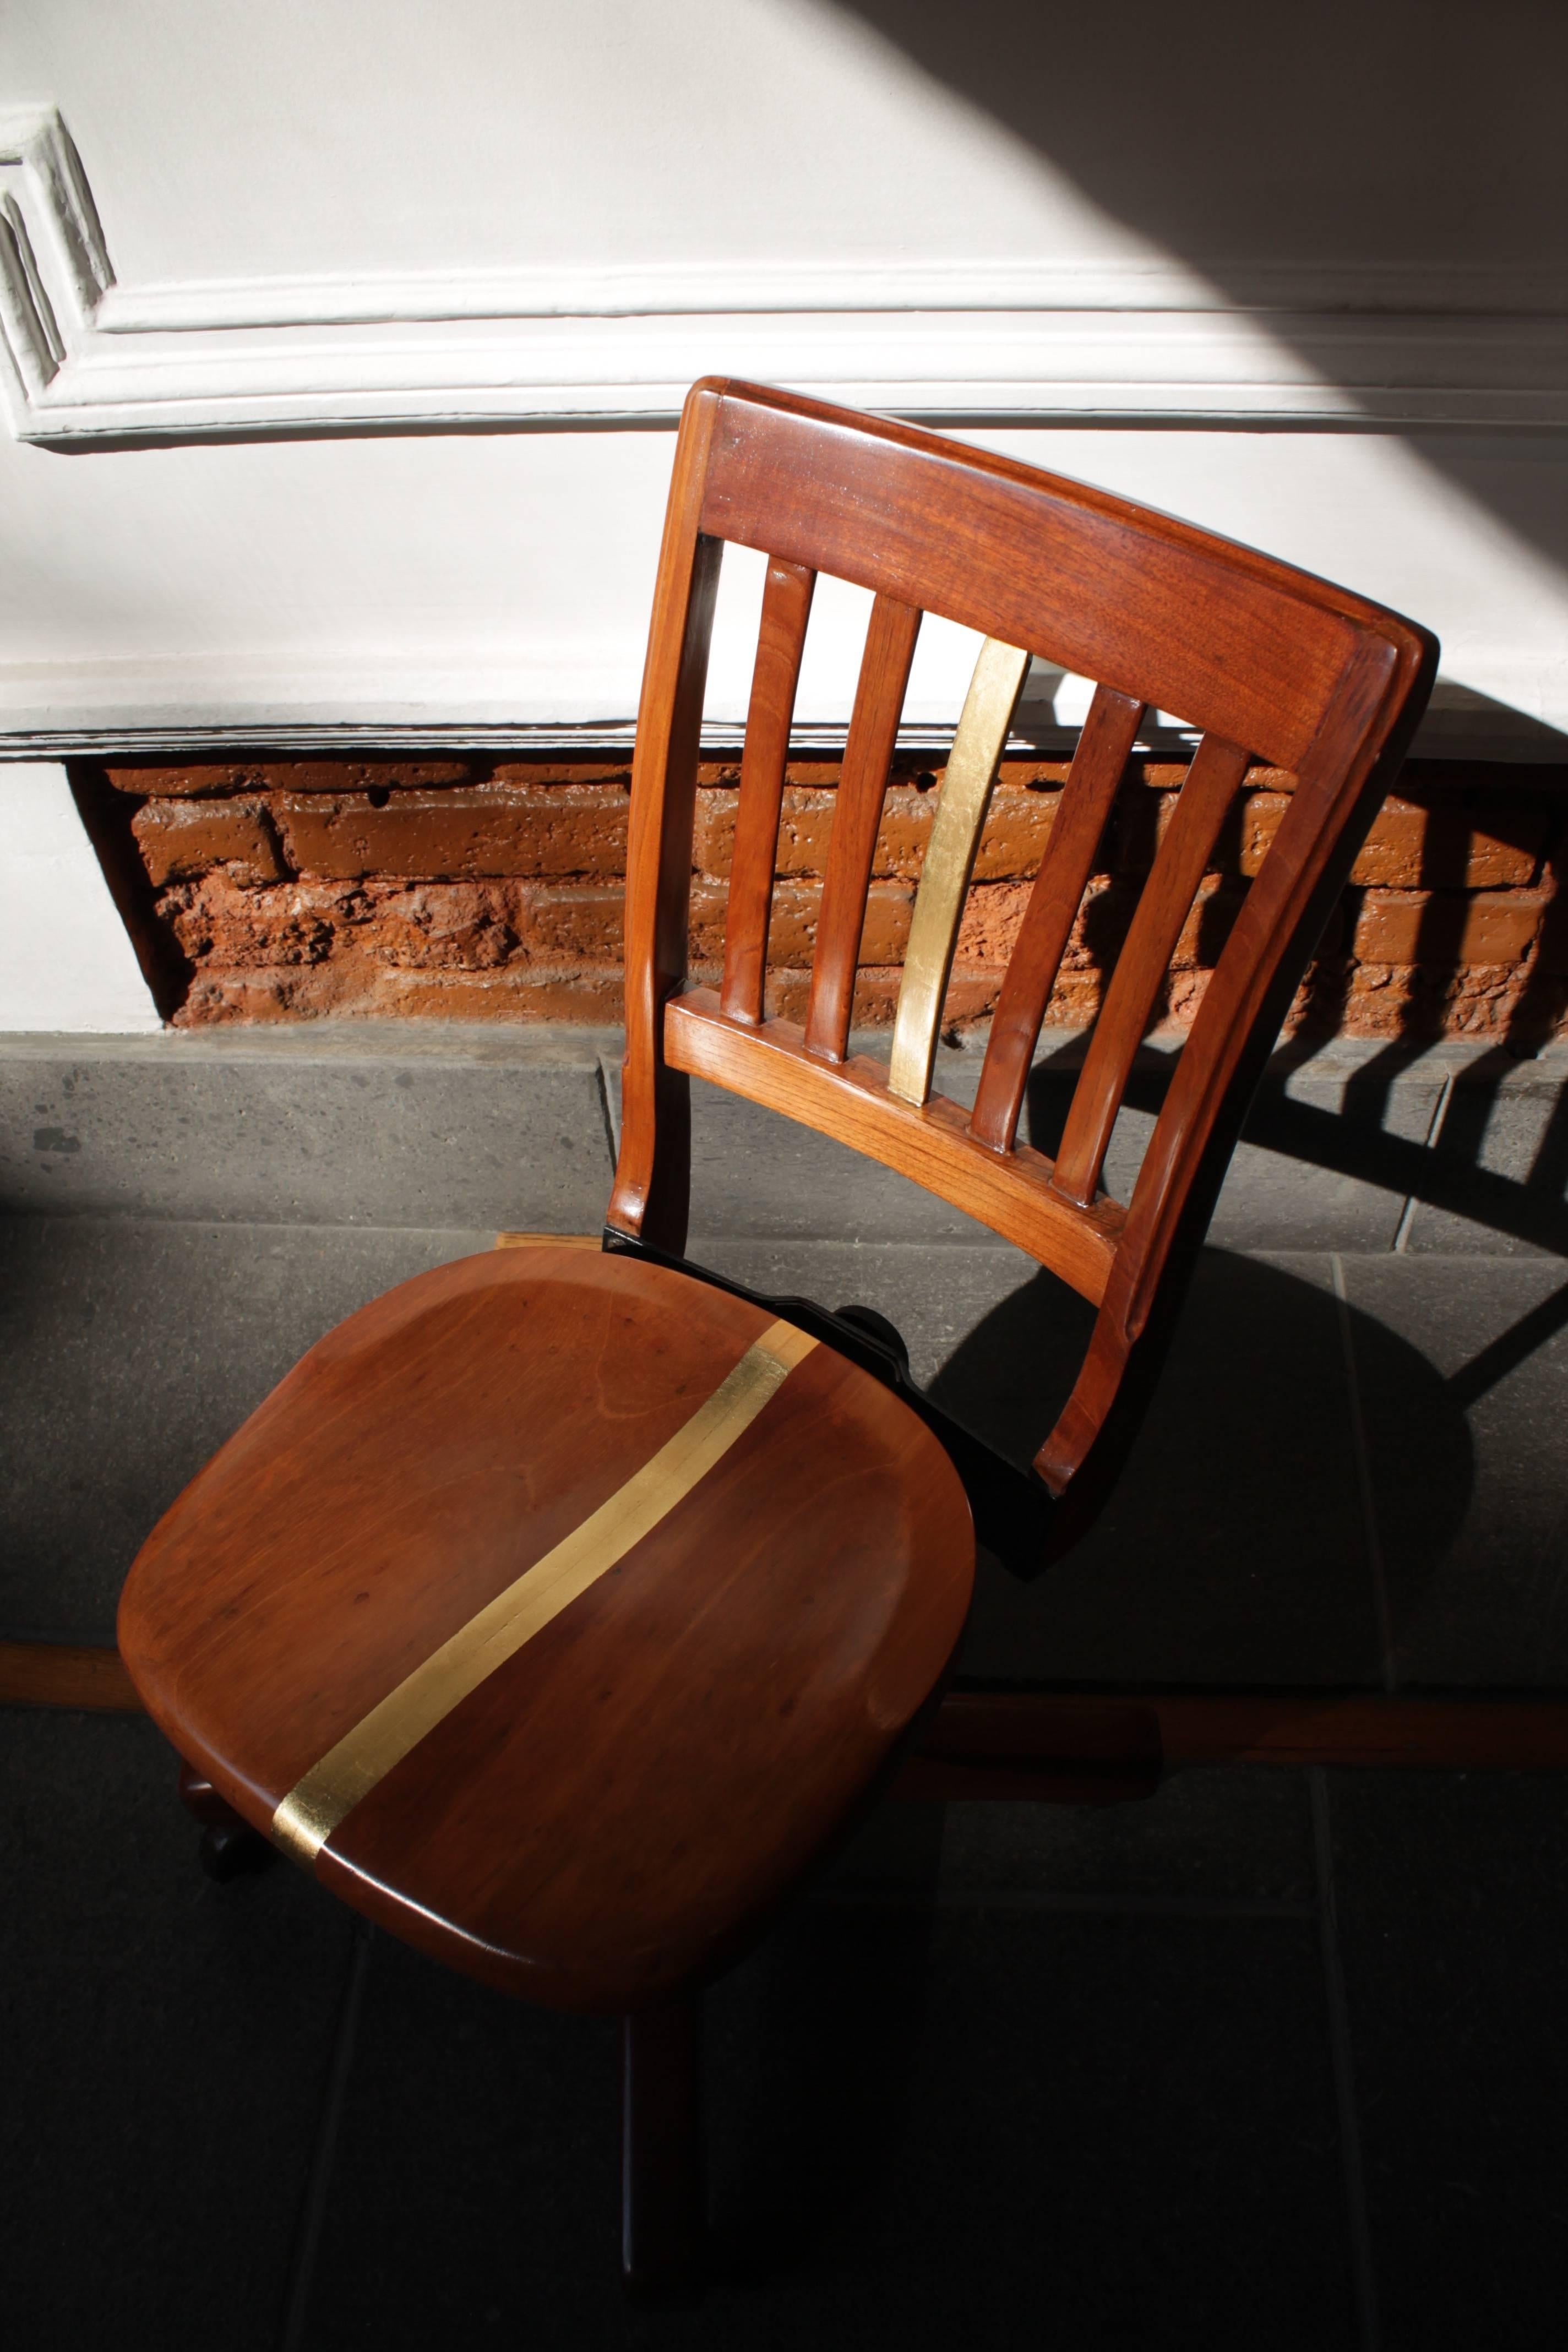 Chaise de bureau intervenue, circa 1940 en bois de cèdre rouge et verni, intervenue avec une bande de feuille d'or.